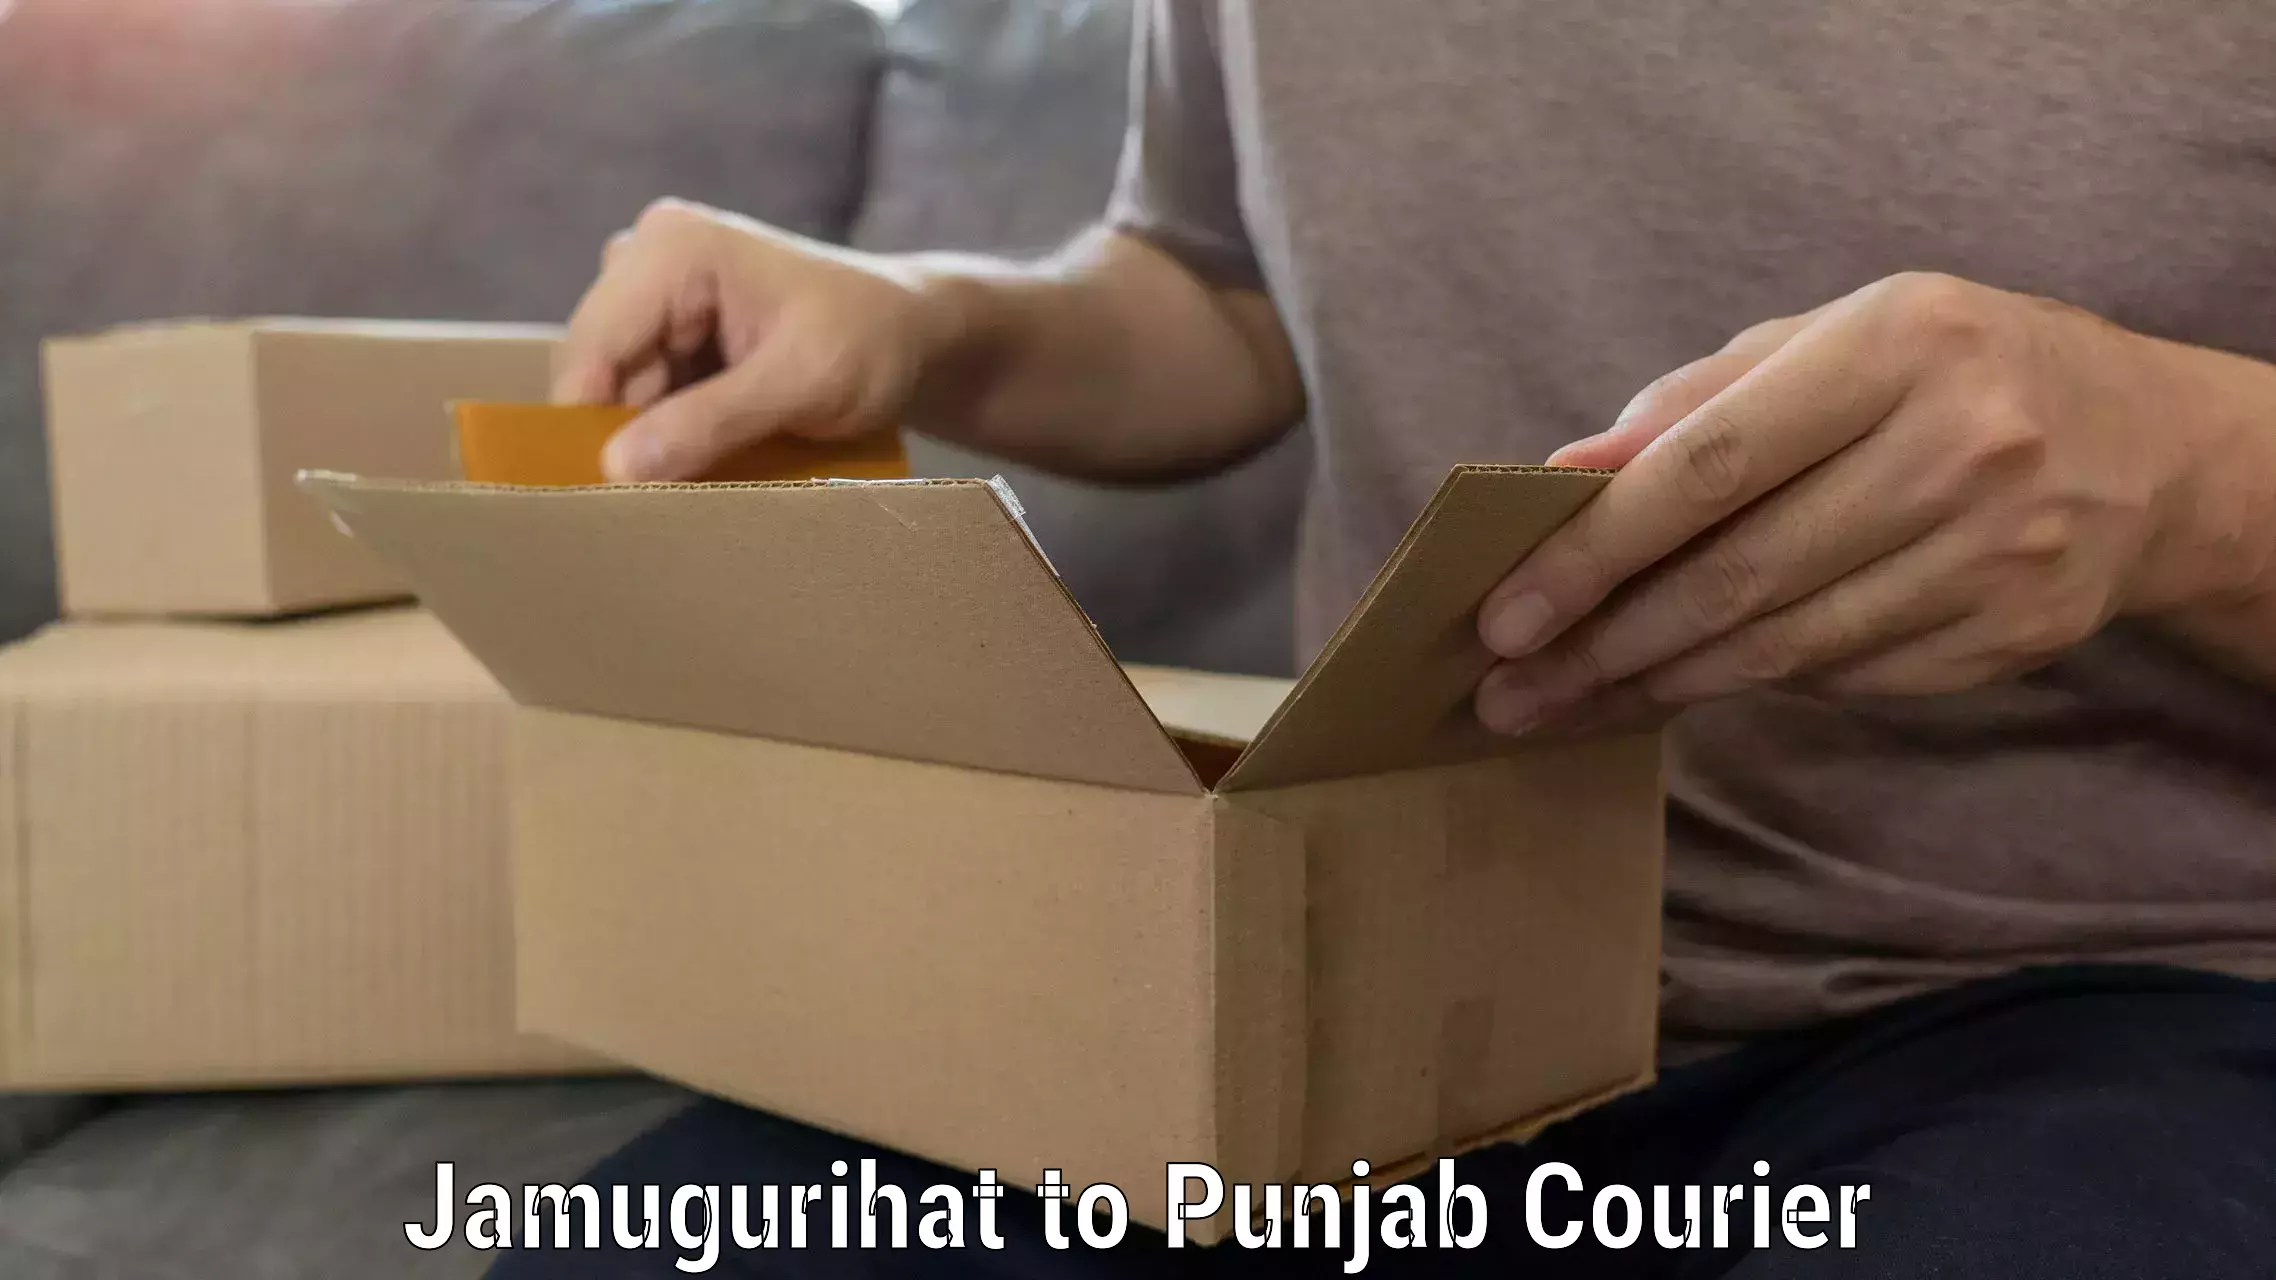 Professional packing and transport Jamugurihat to Punjab